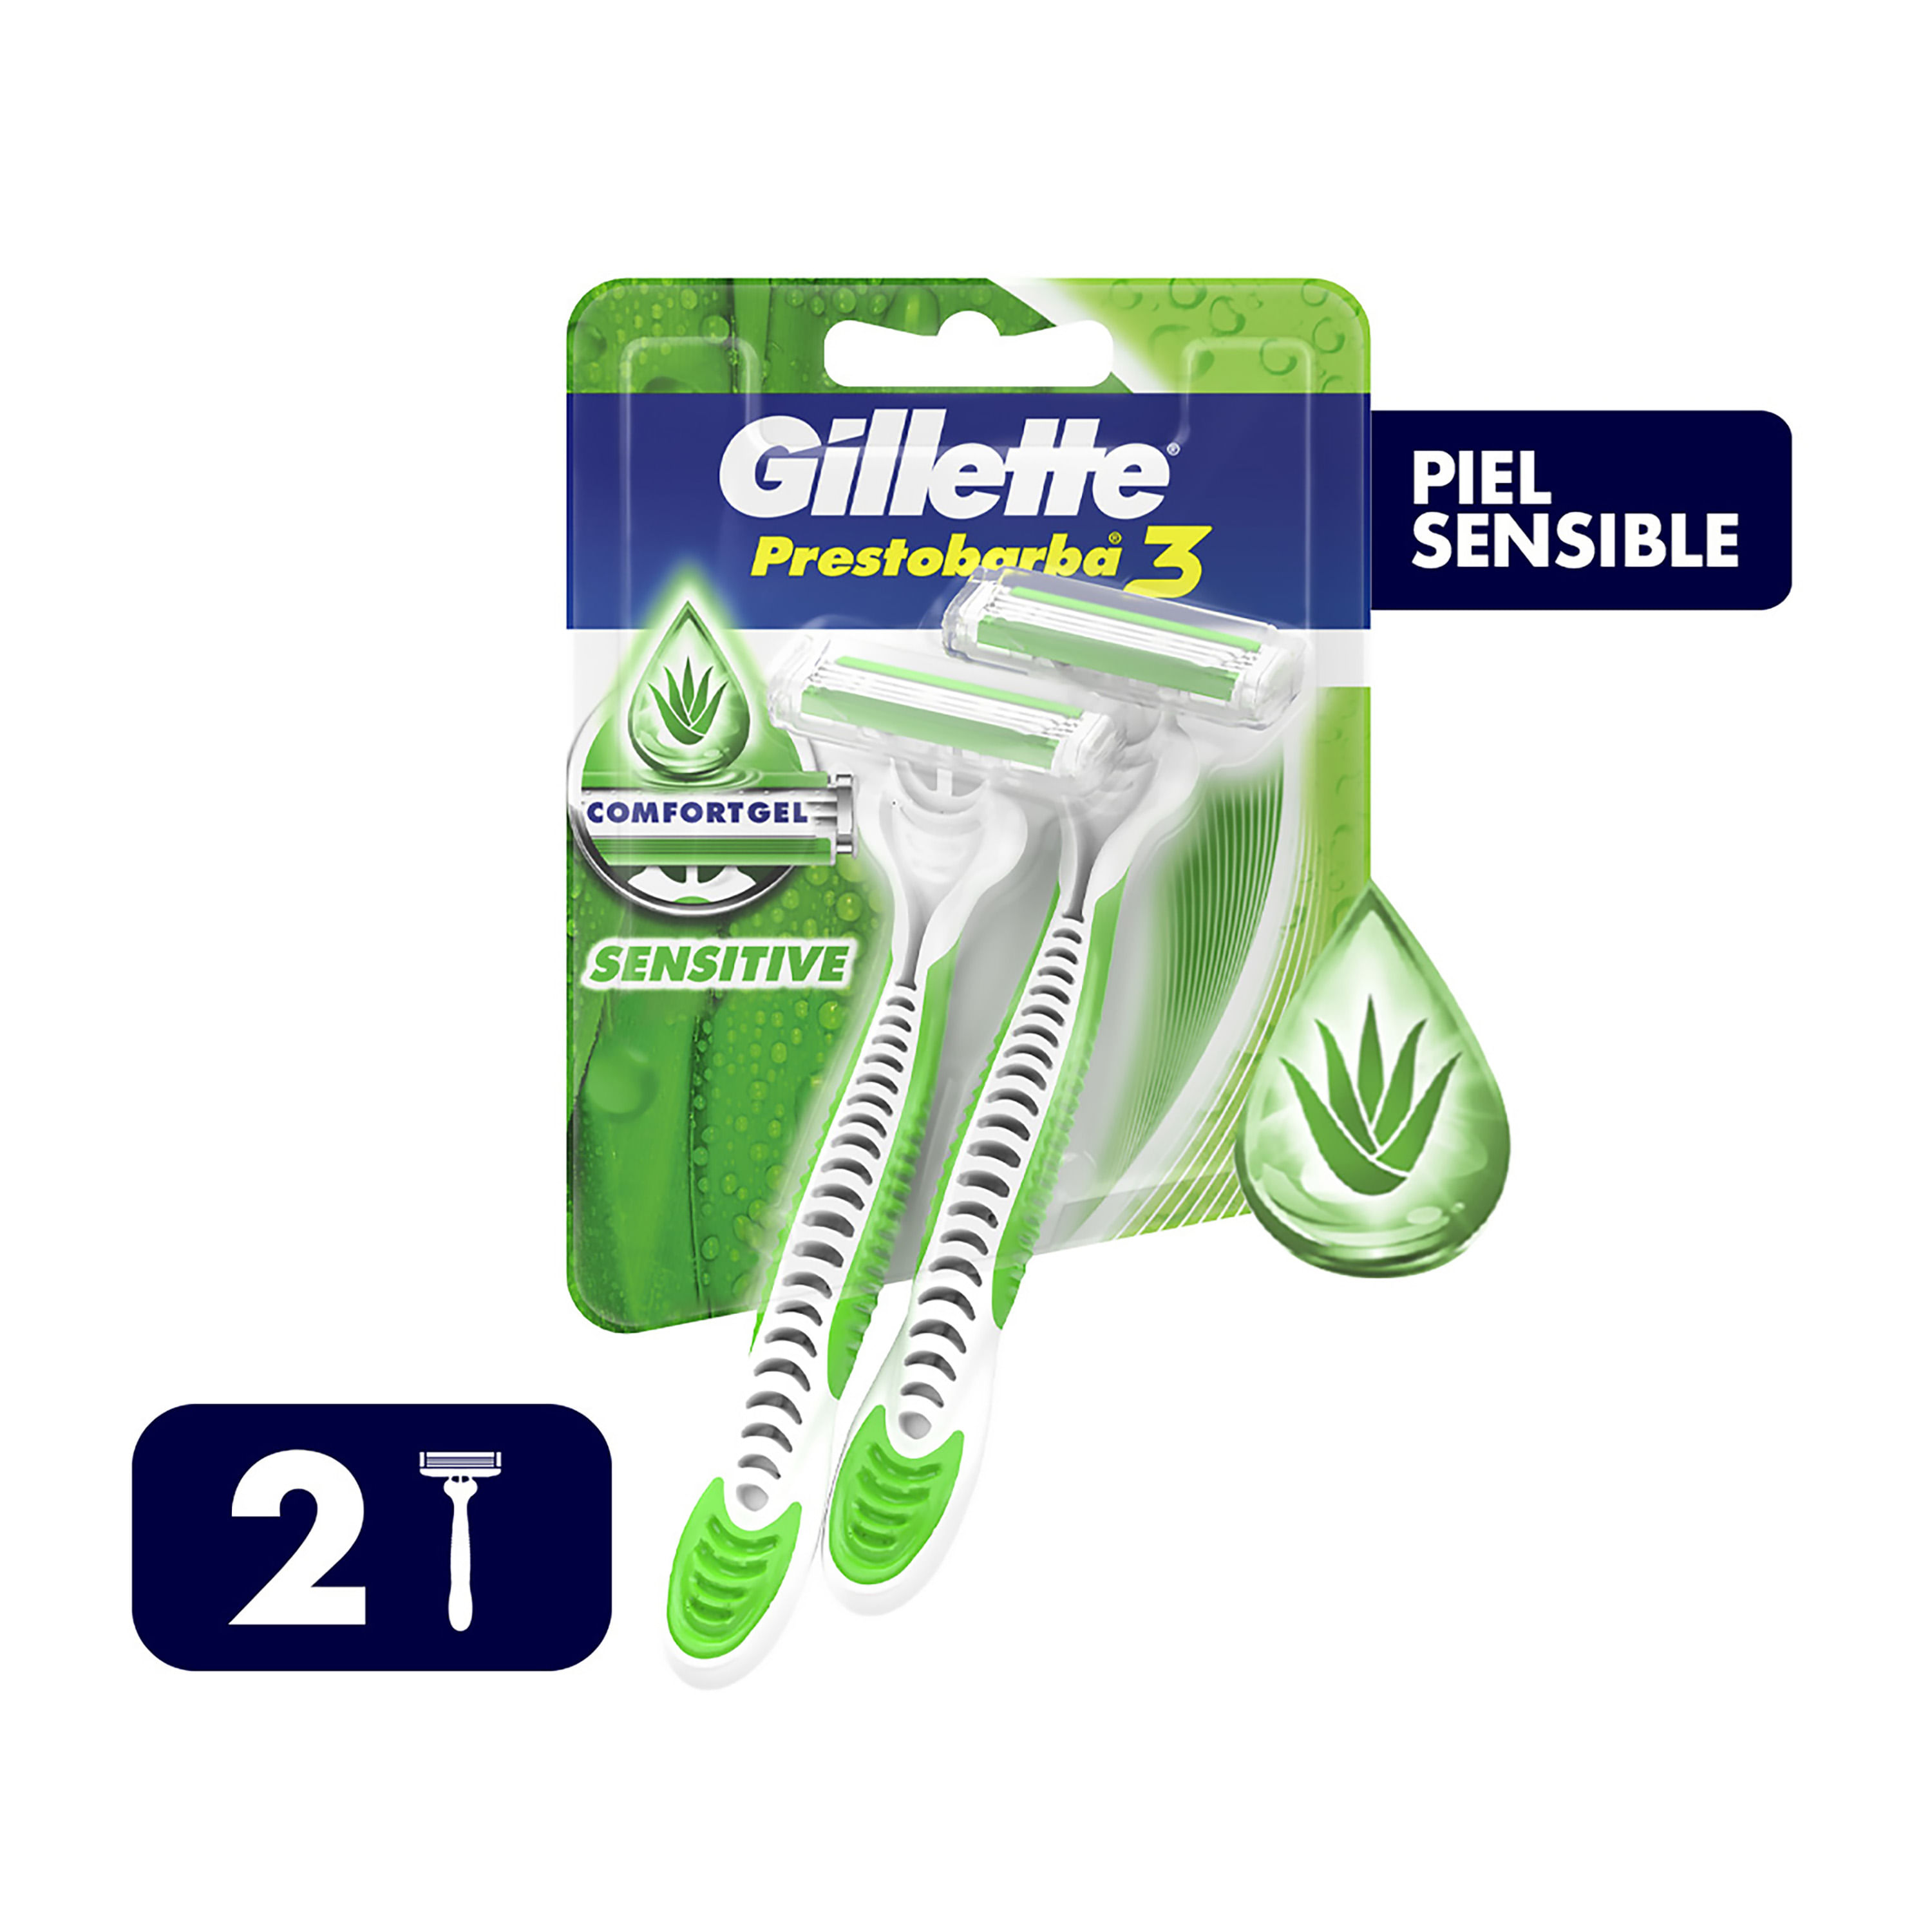 Maquinillas de afeitar Prestobarba3 Comfortgel Gillette (2 U)